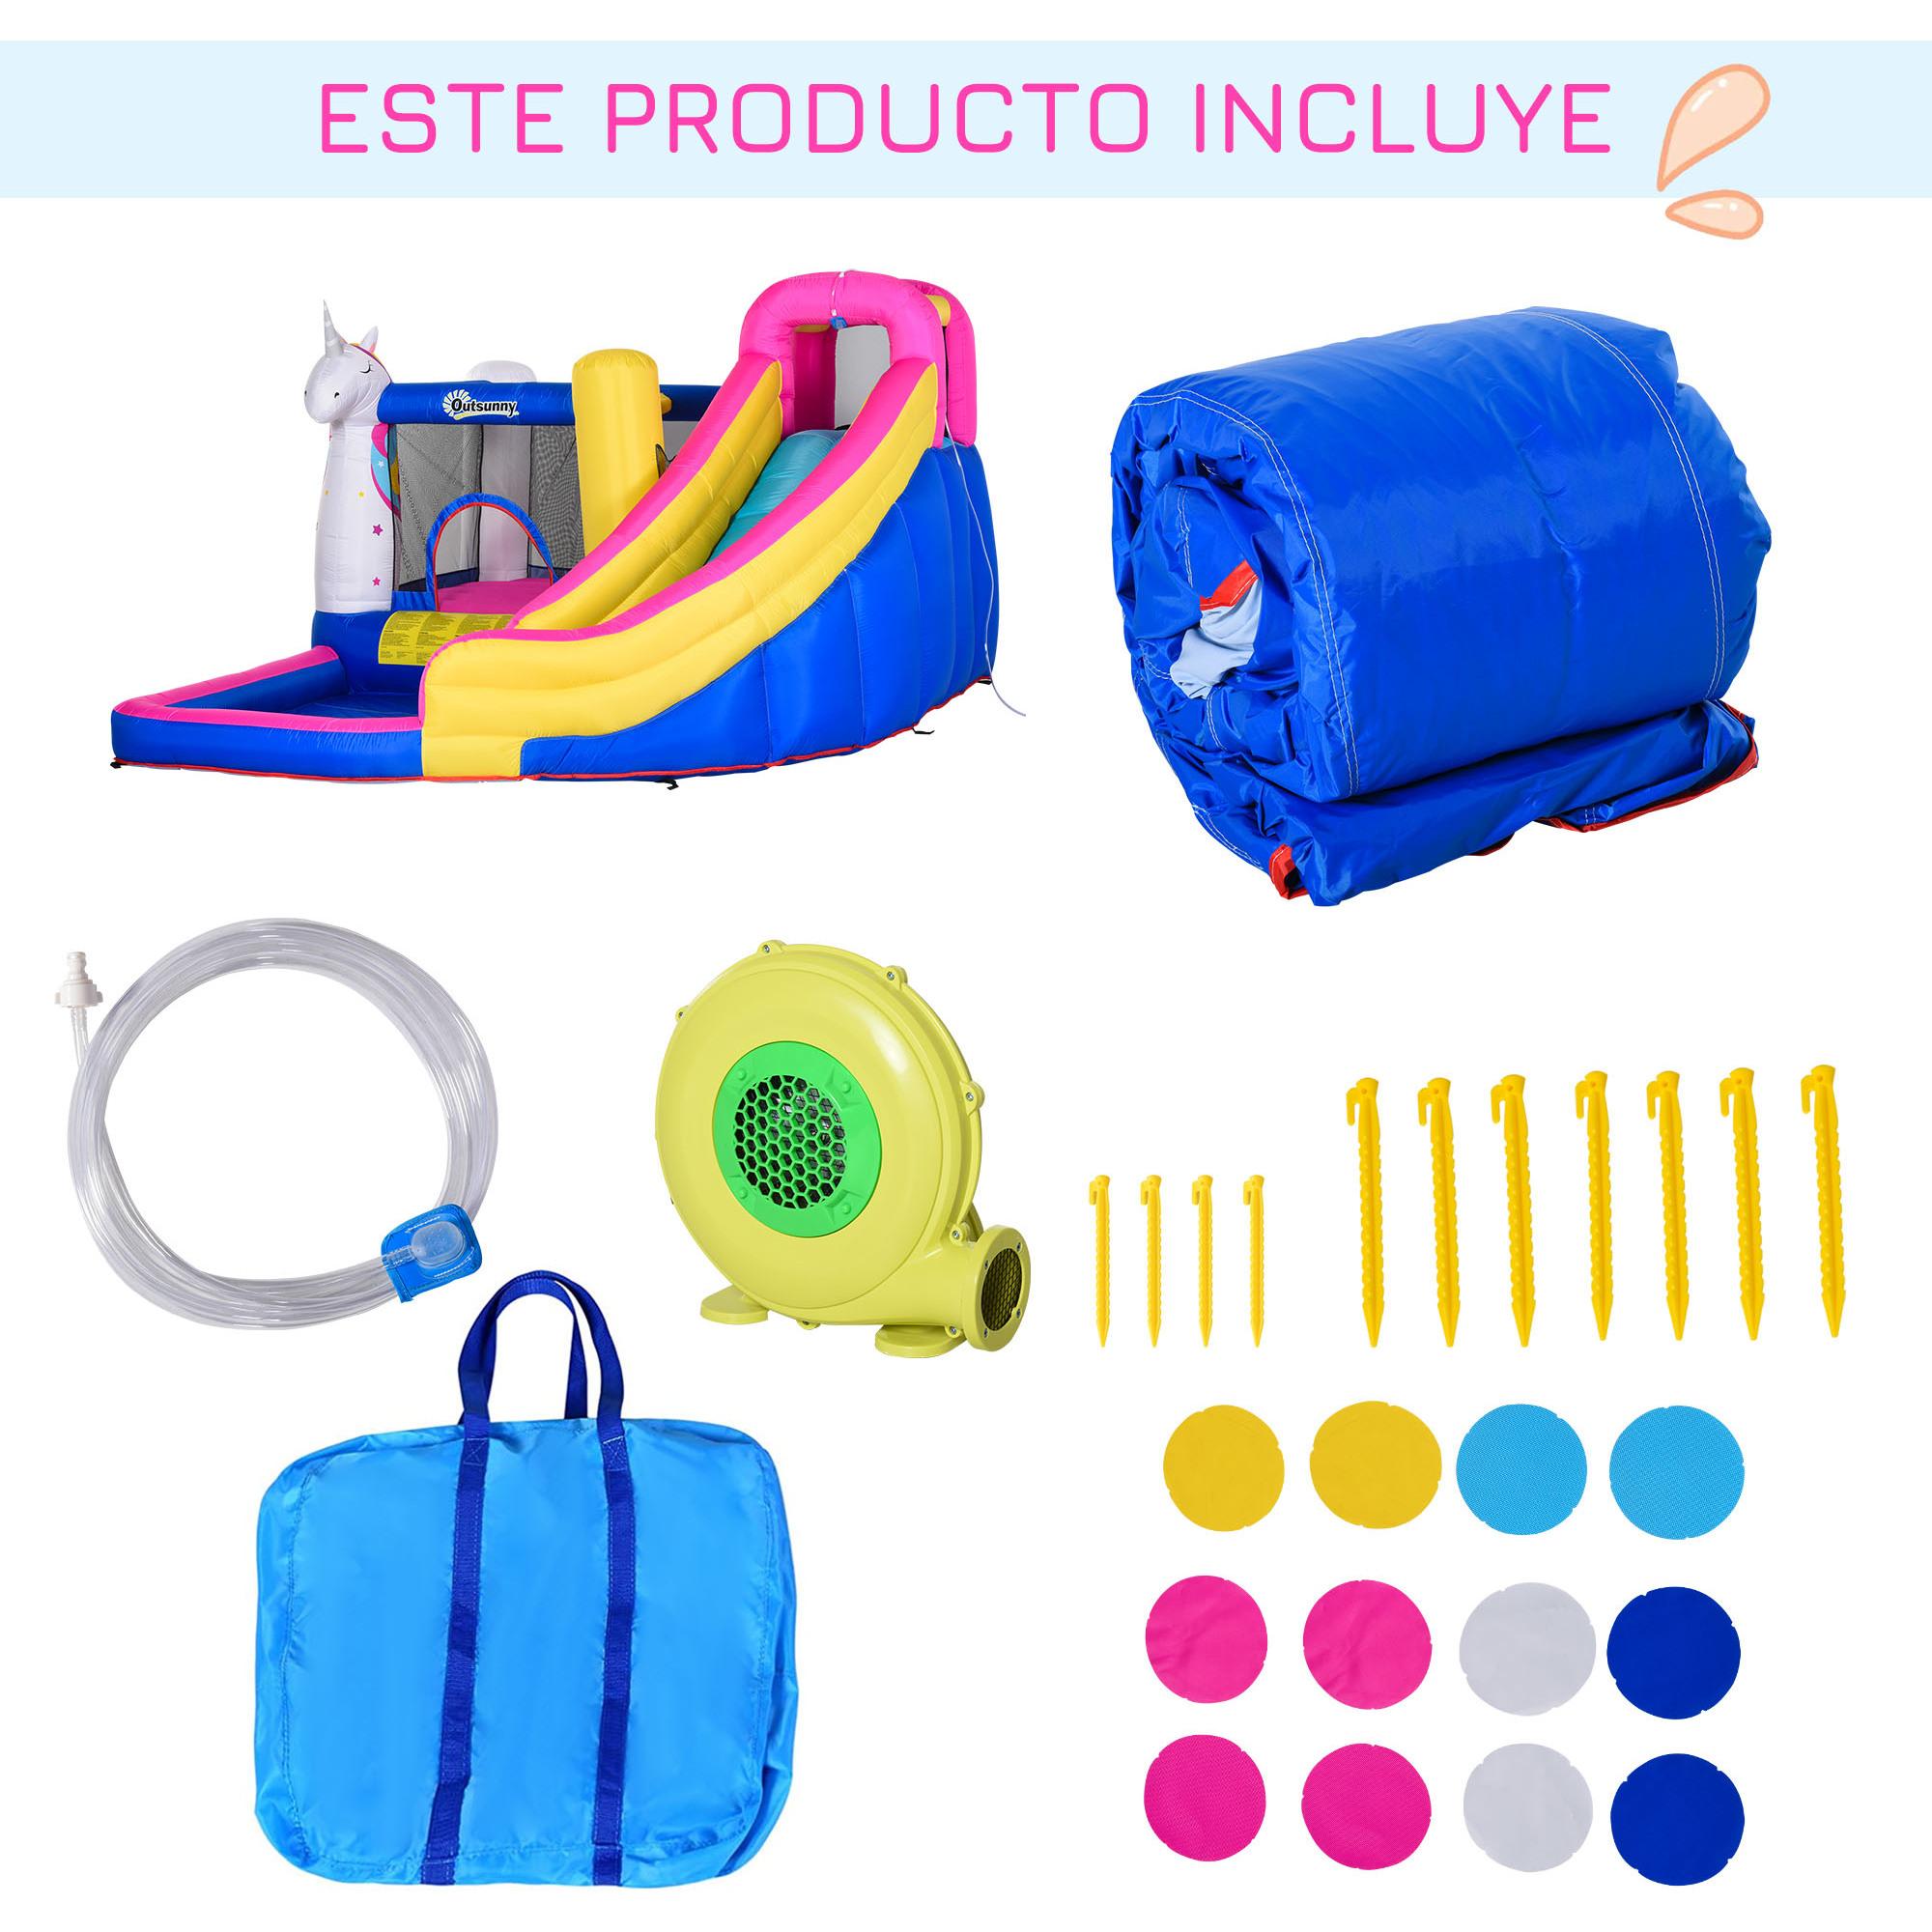 Castillo Hinchable Infantil con Tobogán Piscina Cama de Salto Inflador y Bolsa de Transporte 360x305x210 cm Multicolor